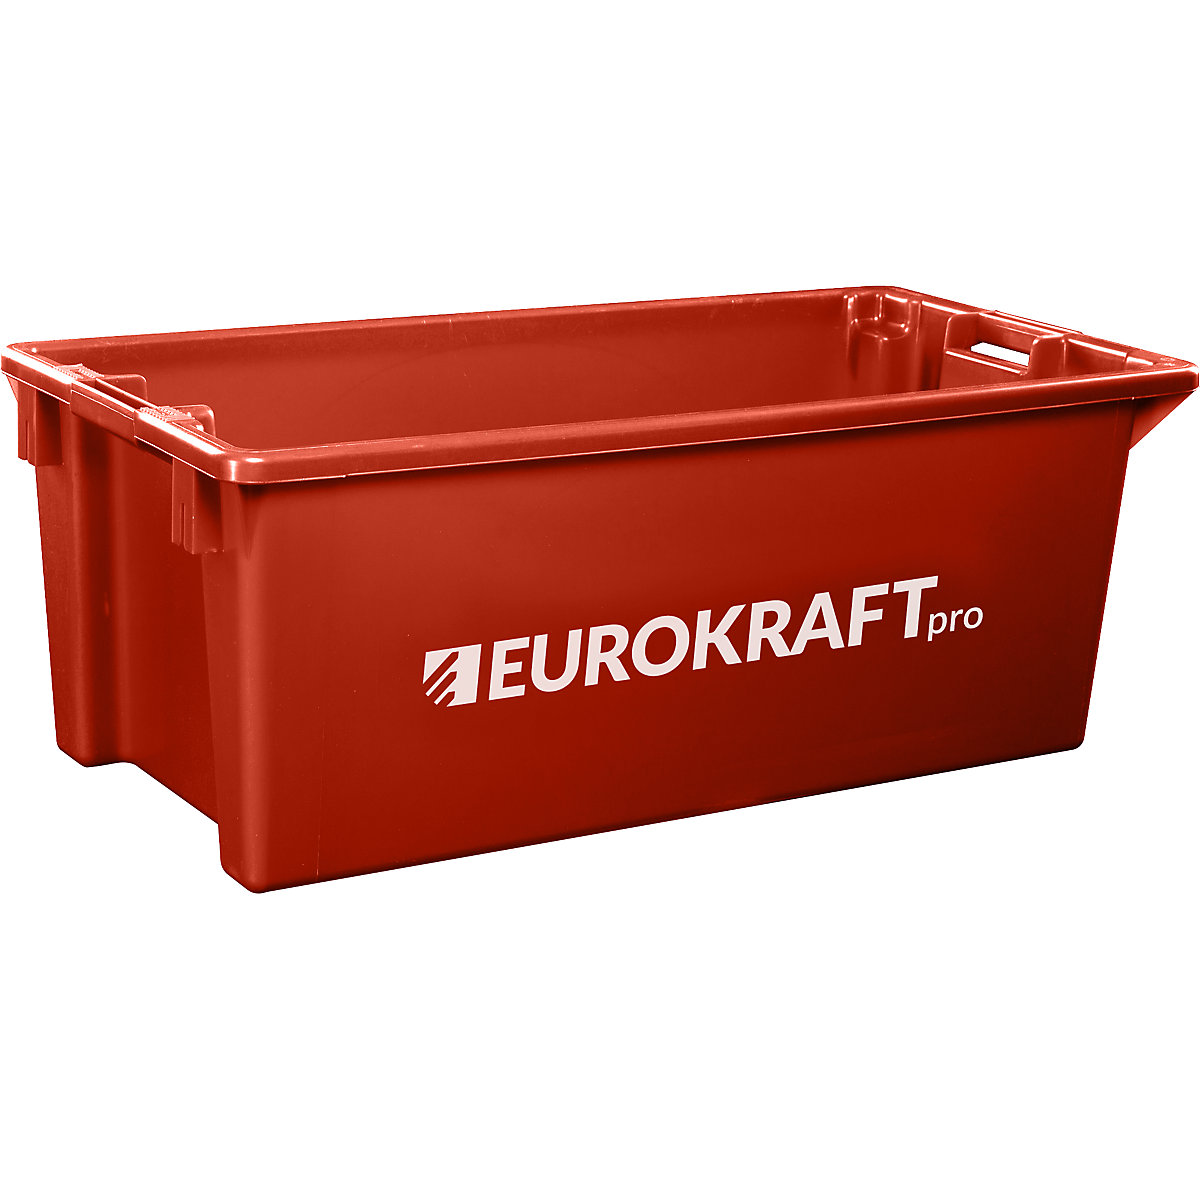 EUROKRAFTpro – Spremnik za slaganje od polipropilena pogodnog za kontakt s prehrambenim proizvodima, volumen 13 l, pak. 4 kom., zatvorene stijenke i dno, u crvenoj boji